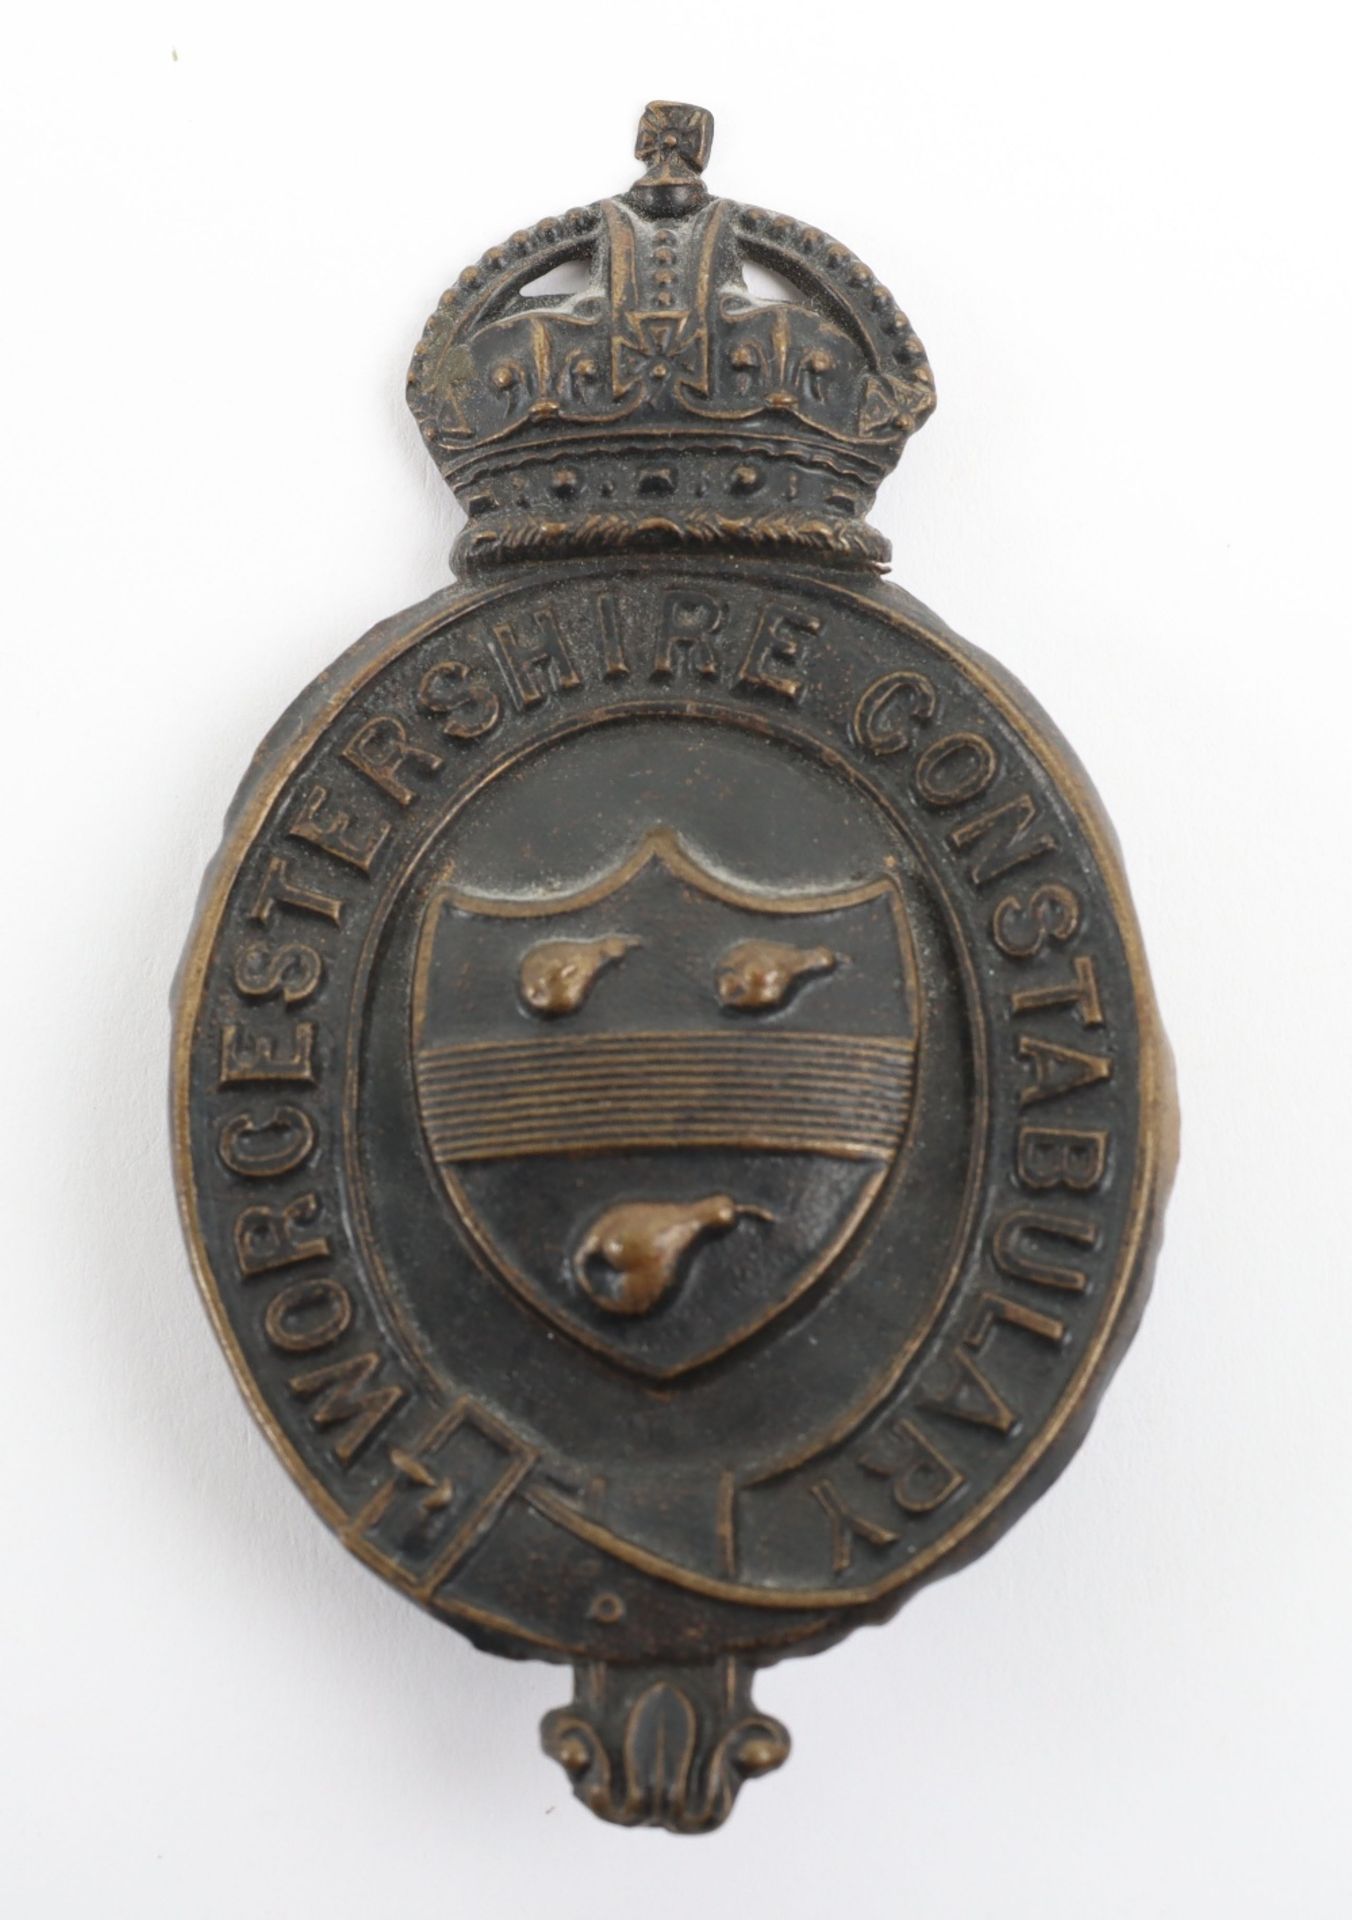 Kings Crown Worcestershire Constabulary Helmet Plate, post 1902